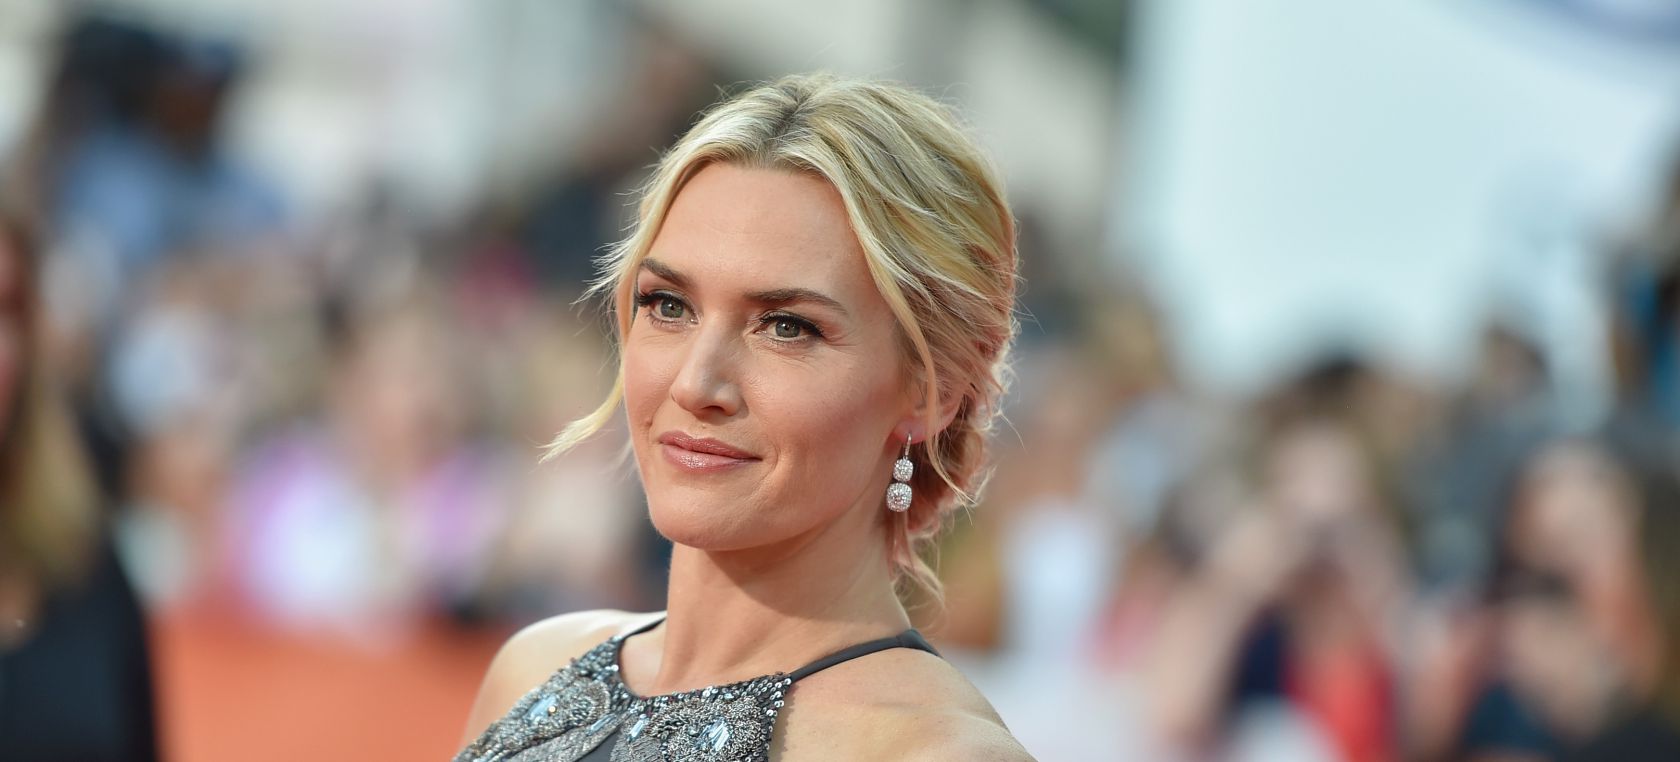 Kate Winslet reclama un MeToo LGTB: “Conozco a actores famosos que temen desvelar su sexualidad”